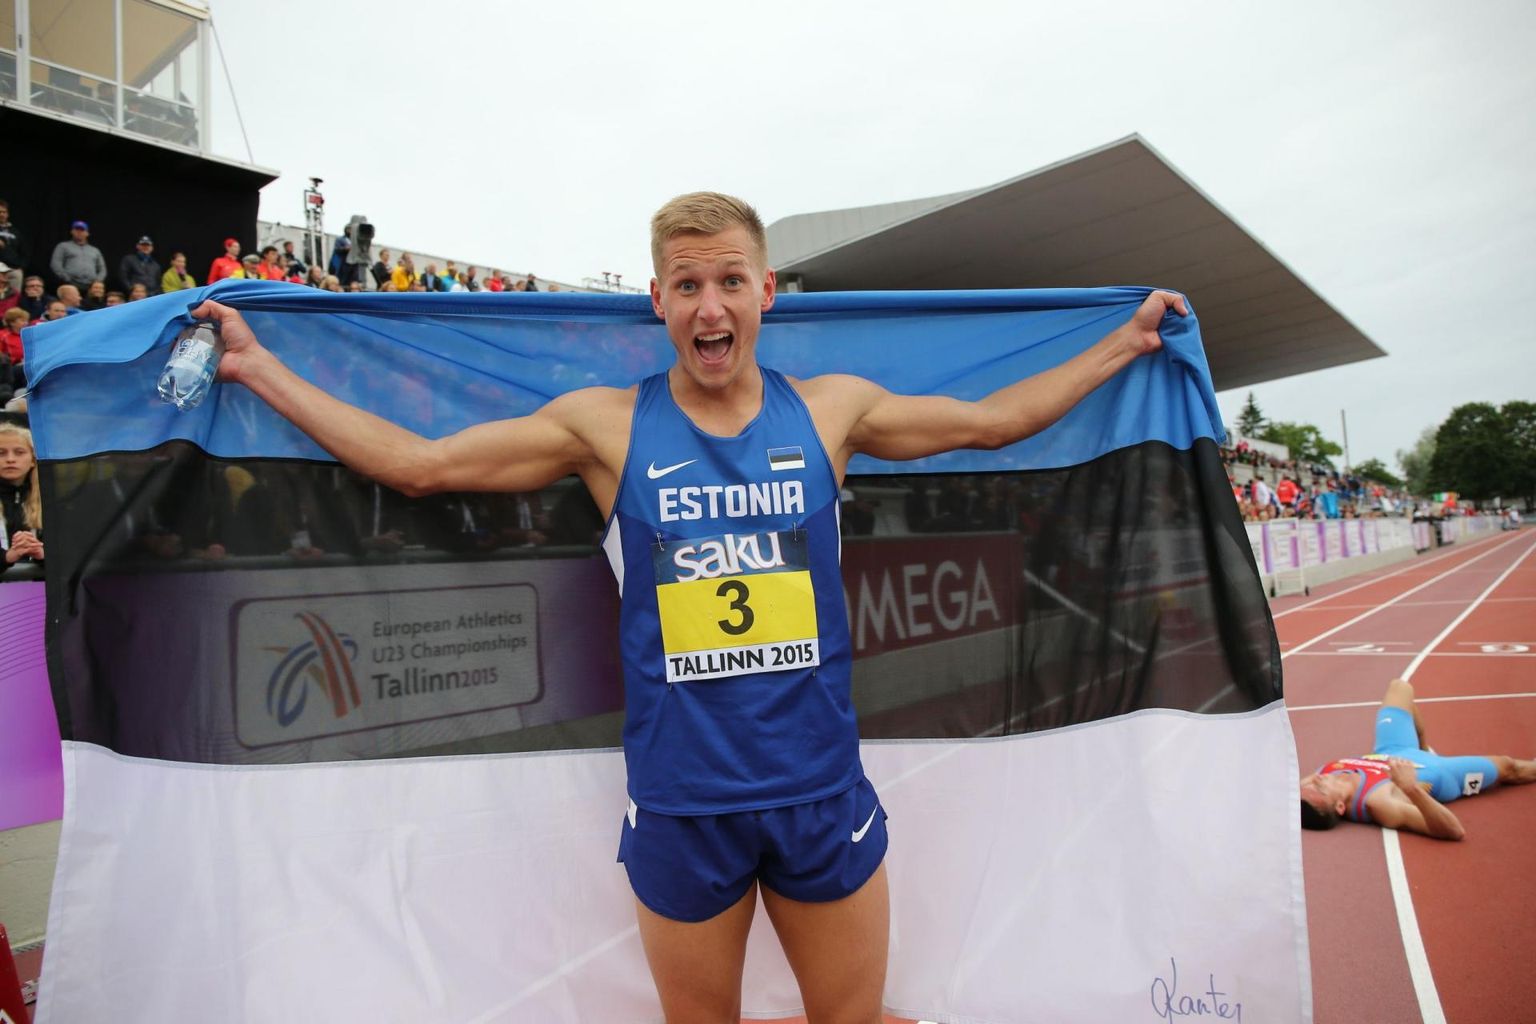 Mitmevõistleja Janek Õiglane on nädalavahetusel meistrivõistlustel stardis ning jahib olümpiapiletit.